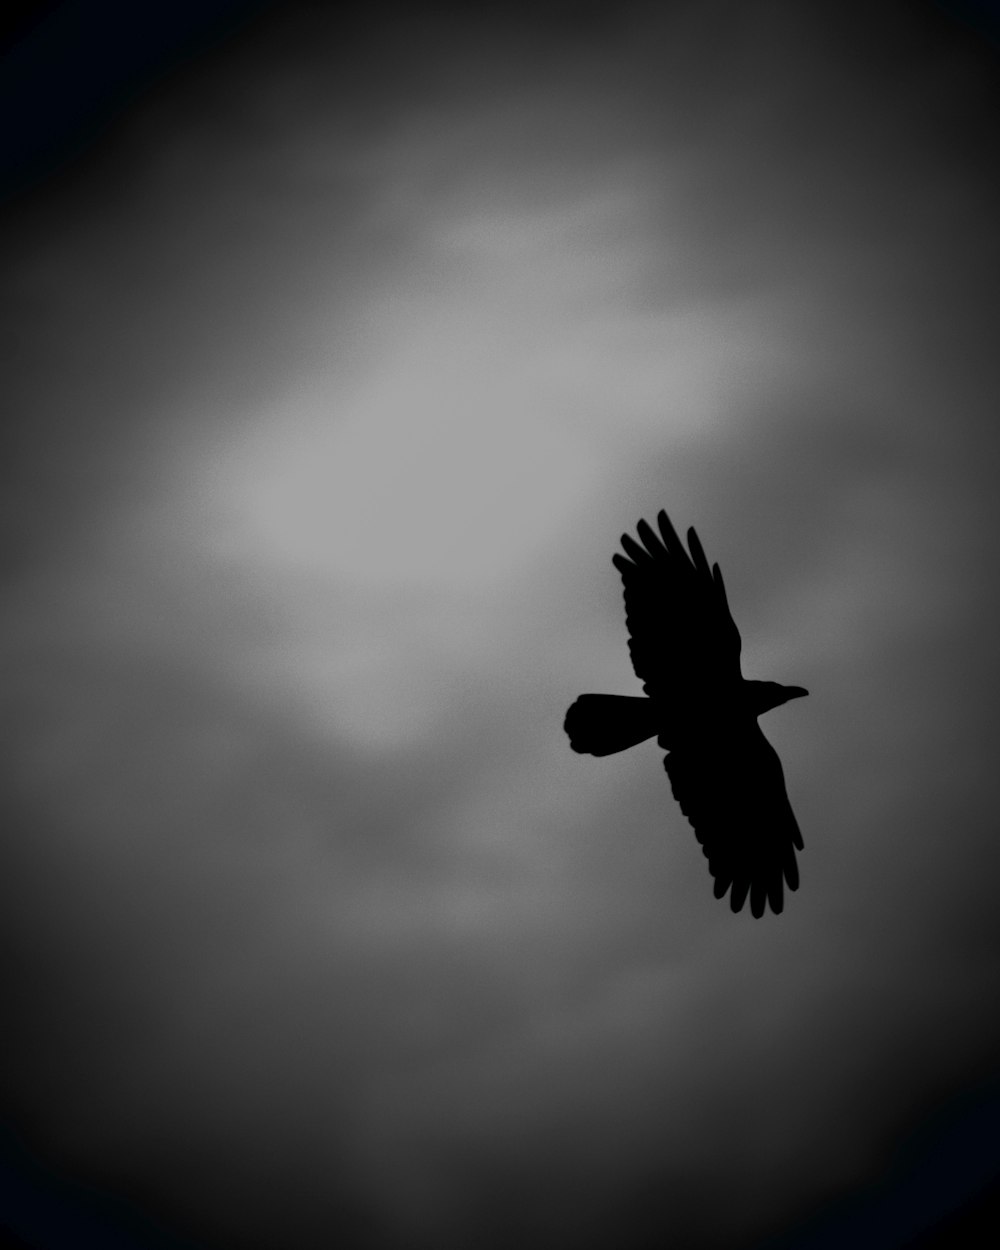 una foto in bianco e nero di un uccello che vola nel cielo